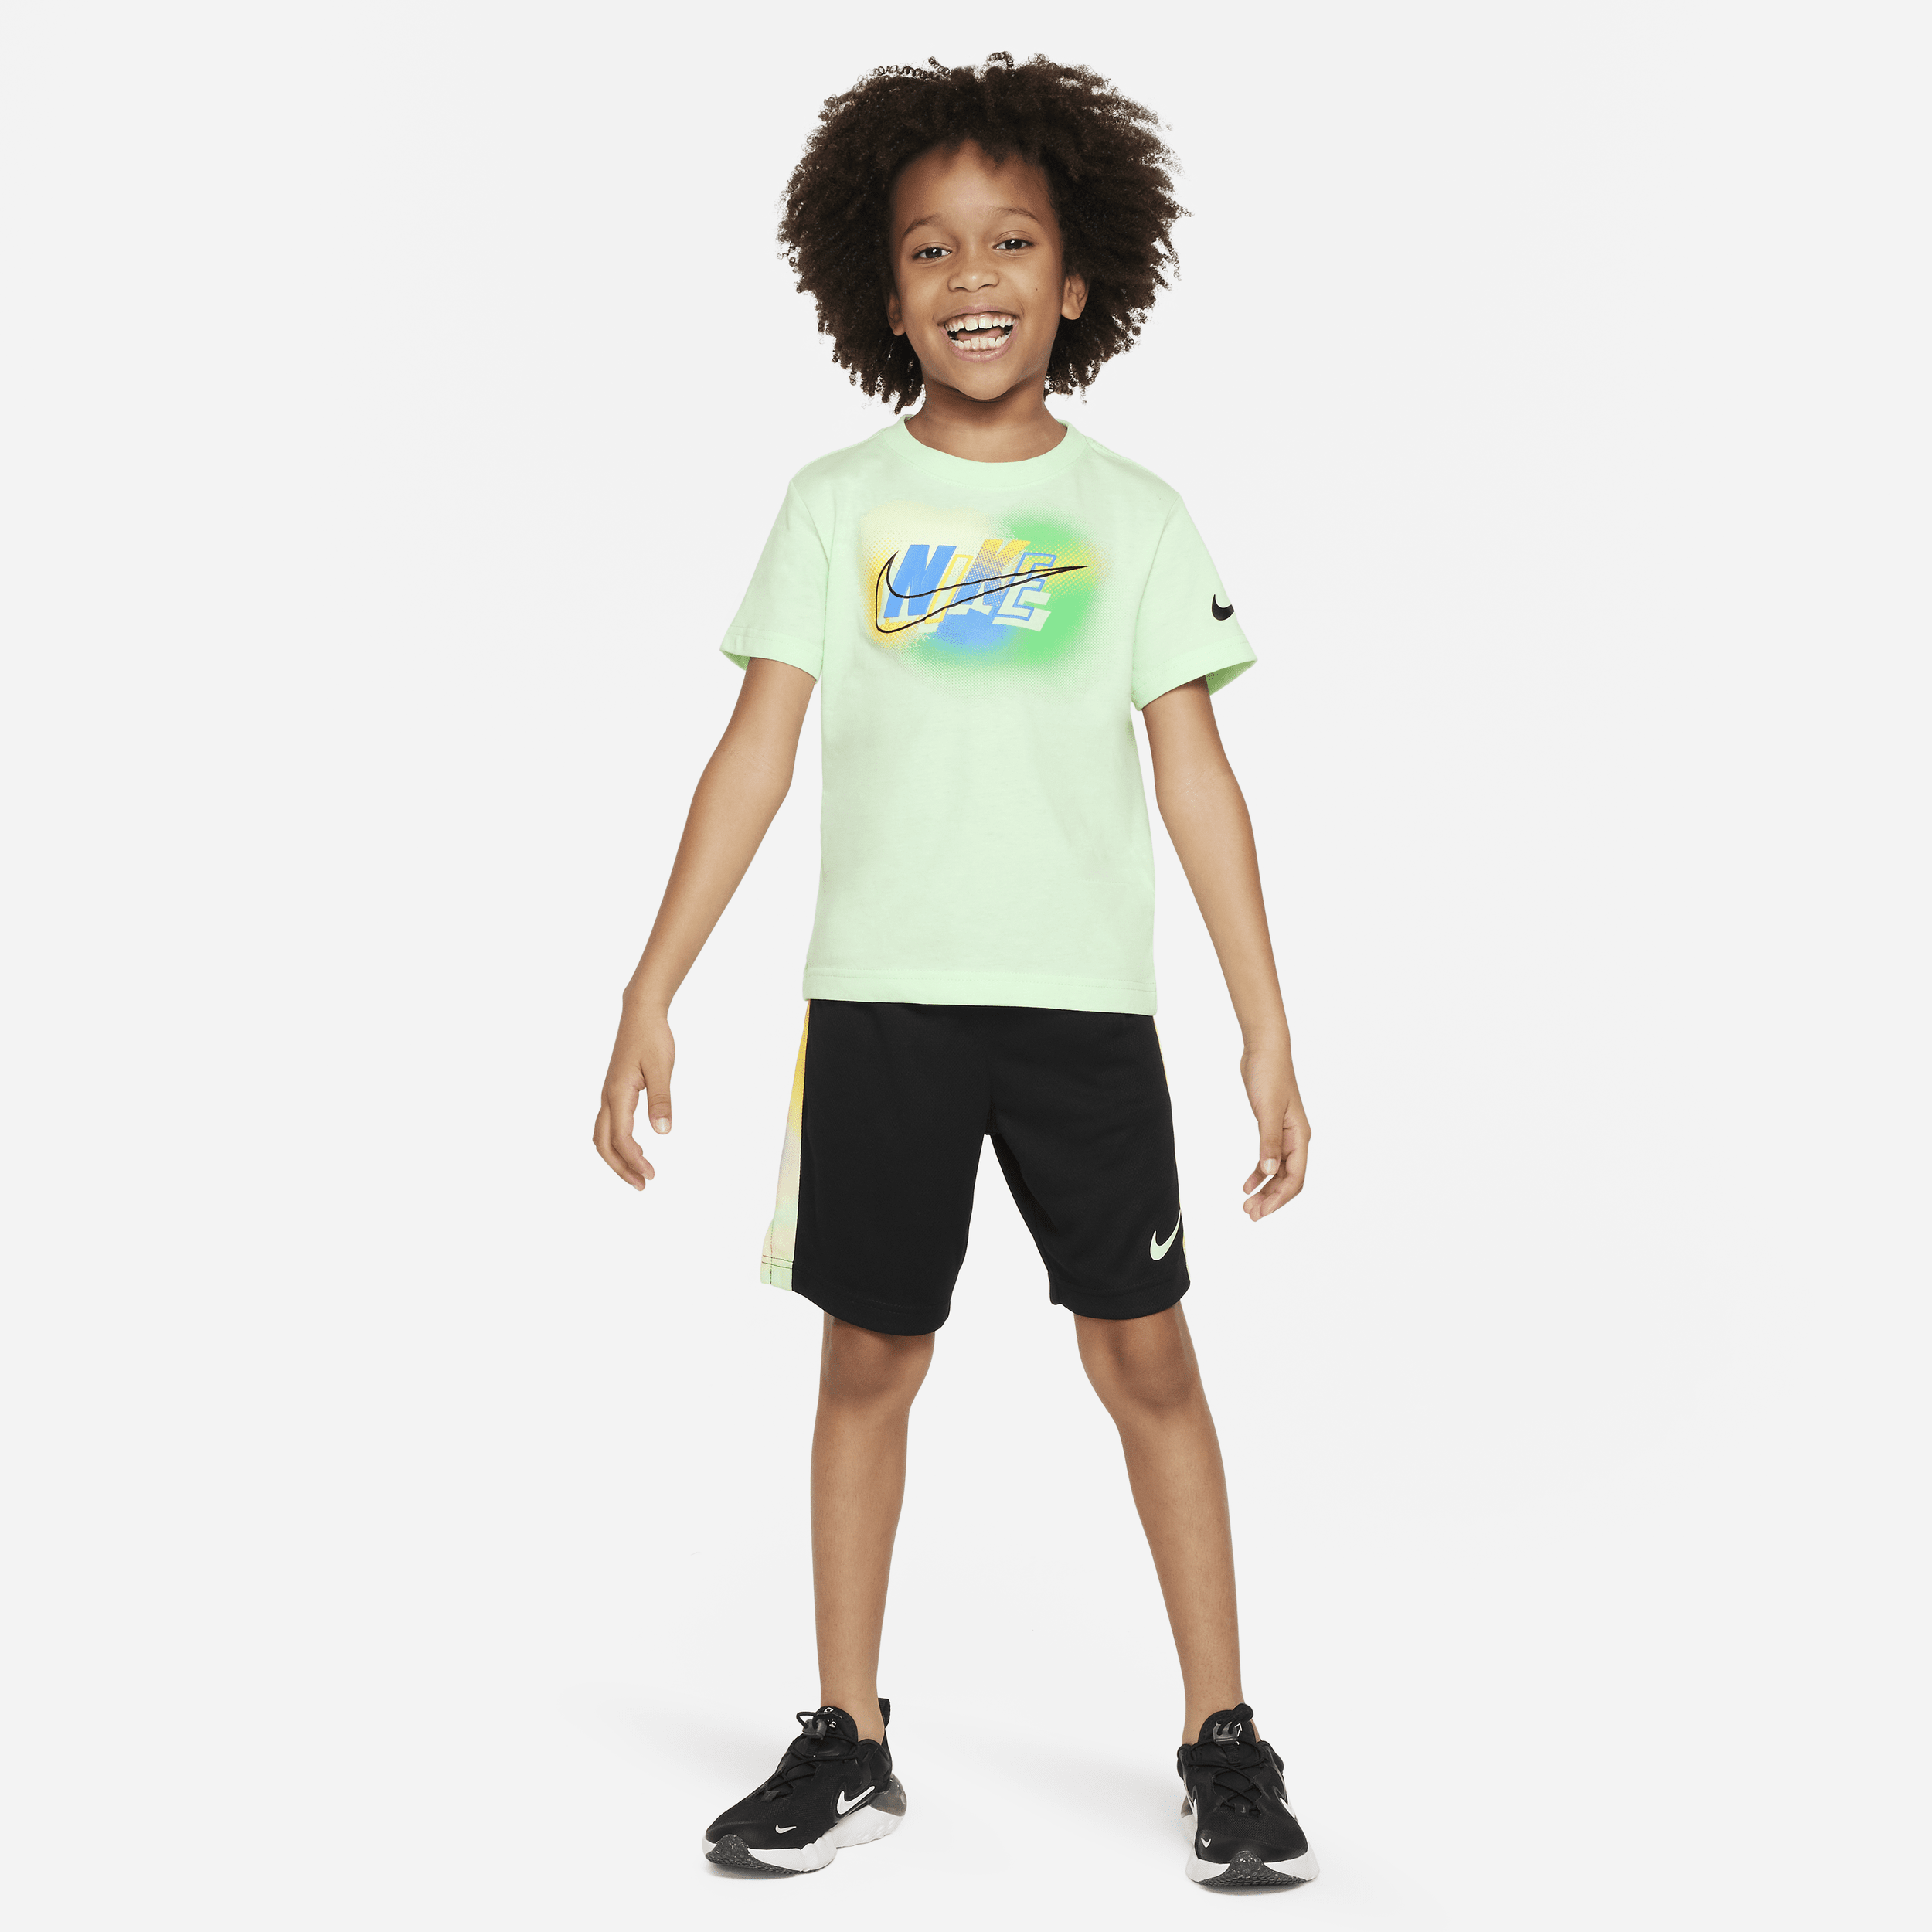 Completo con shorts Nike Hazy Rays – Bambino/a - Nero